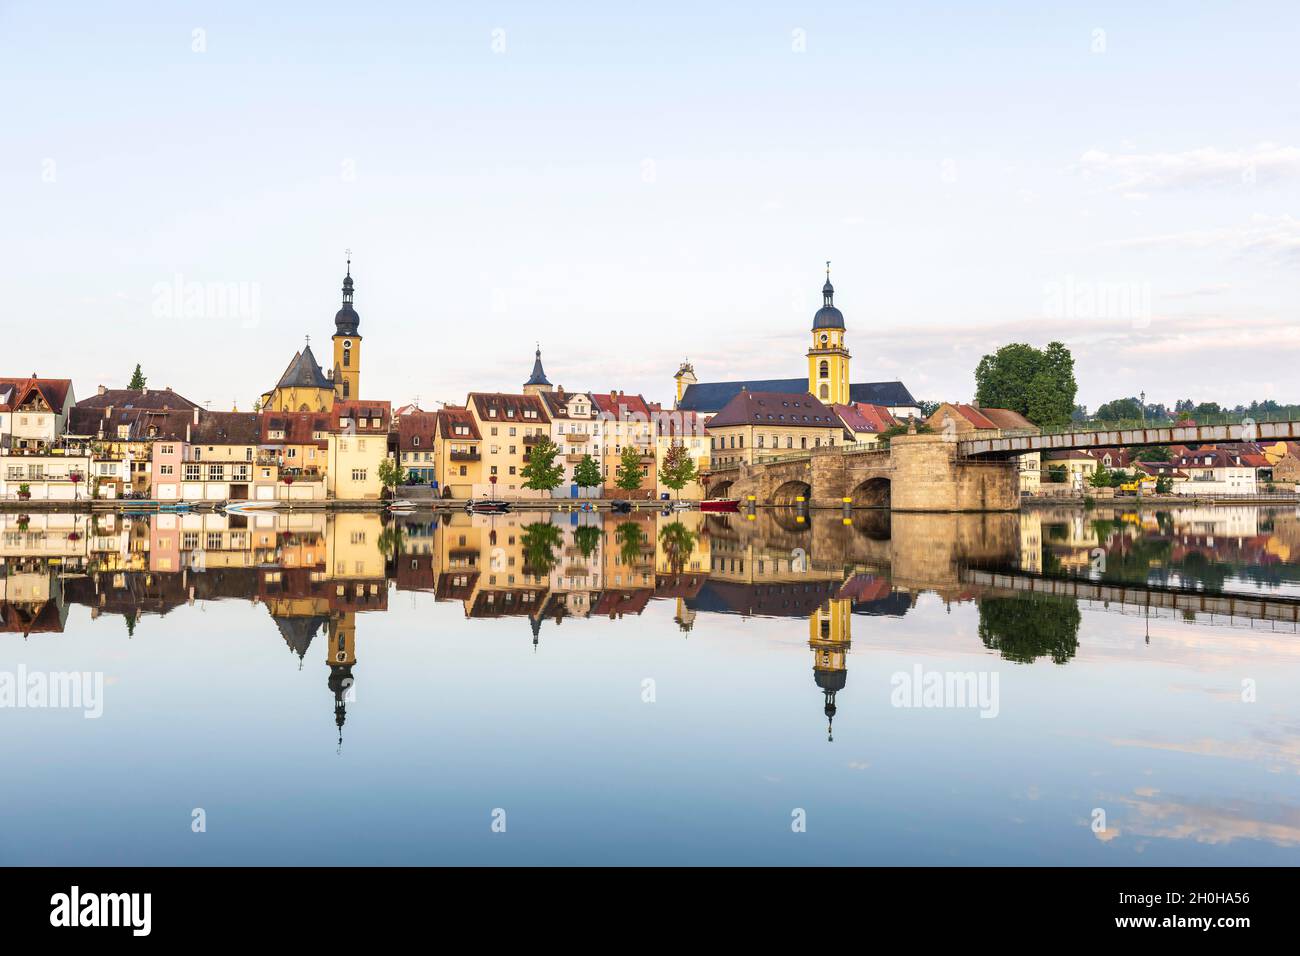 City view, Kitzingen, Main, Lower Franconia, Bavaria, Germany Stock Photo